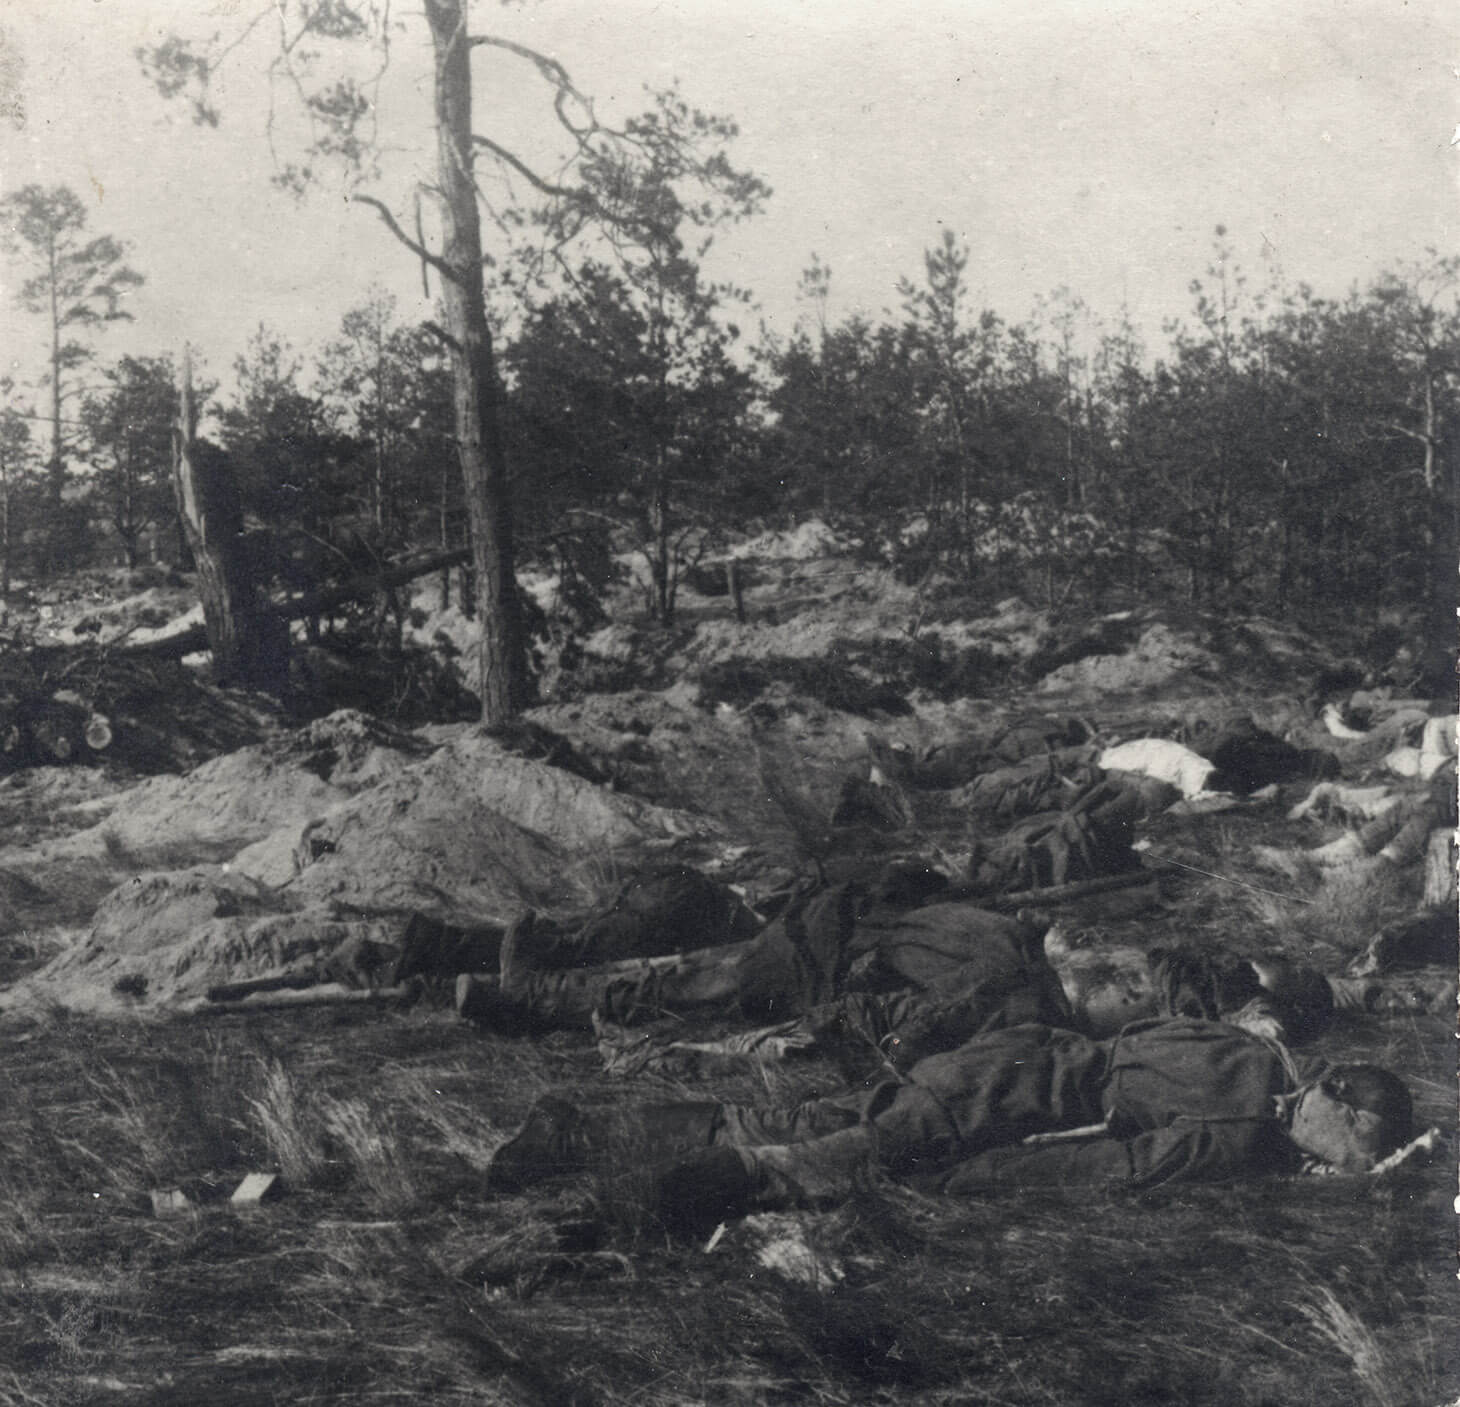 Czarno-białe zdjęcie ukazujące pobojowisko w lesie. W scenerii zwalonych drzew i małych, nieregularnych kop piasku, na trawie, na pierwszym planie widać kilka leżących zwłok w mundurach. 

